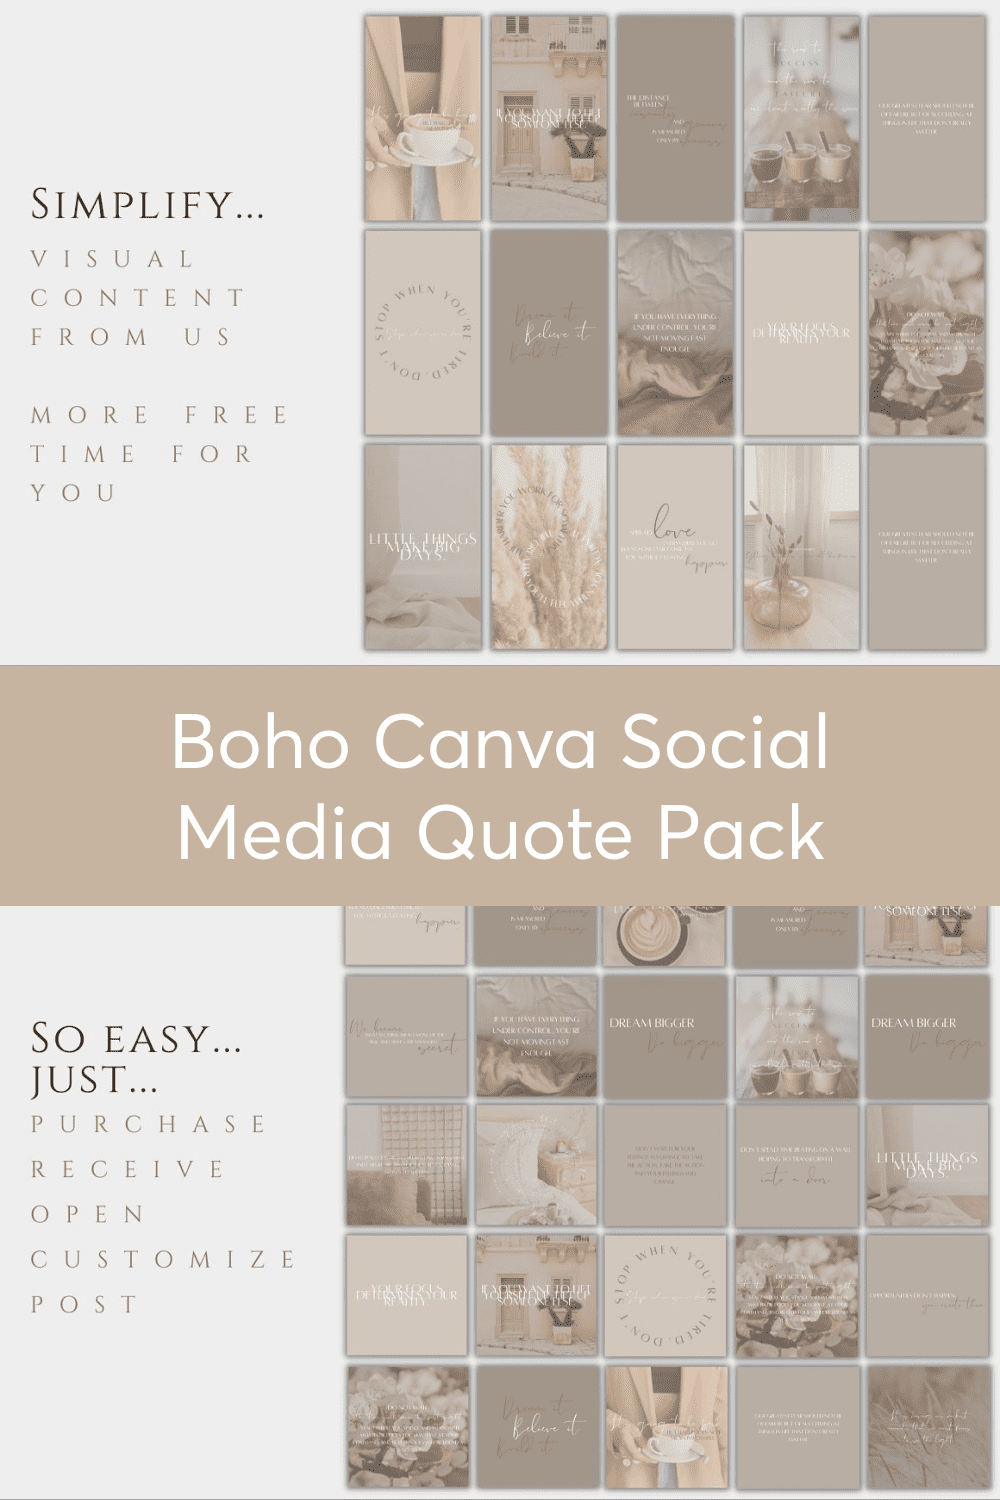 Boho Canva Social Media Quote Pack - for Pinterest.